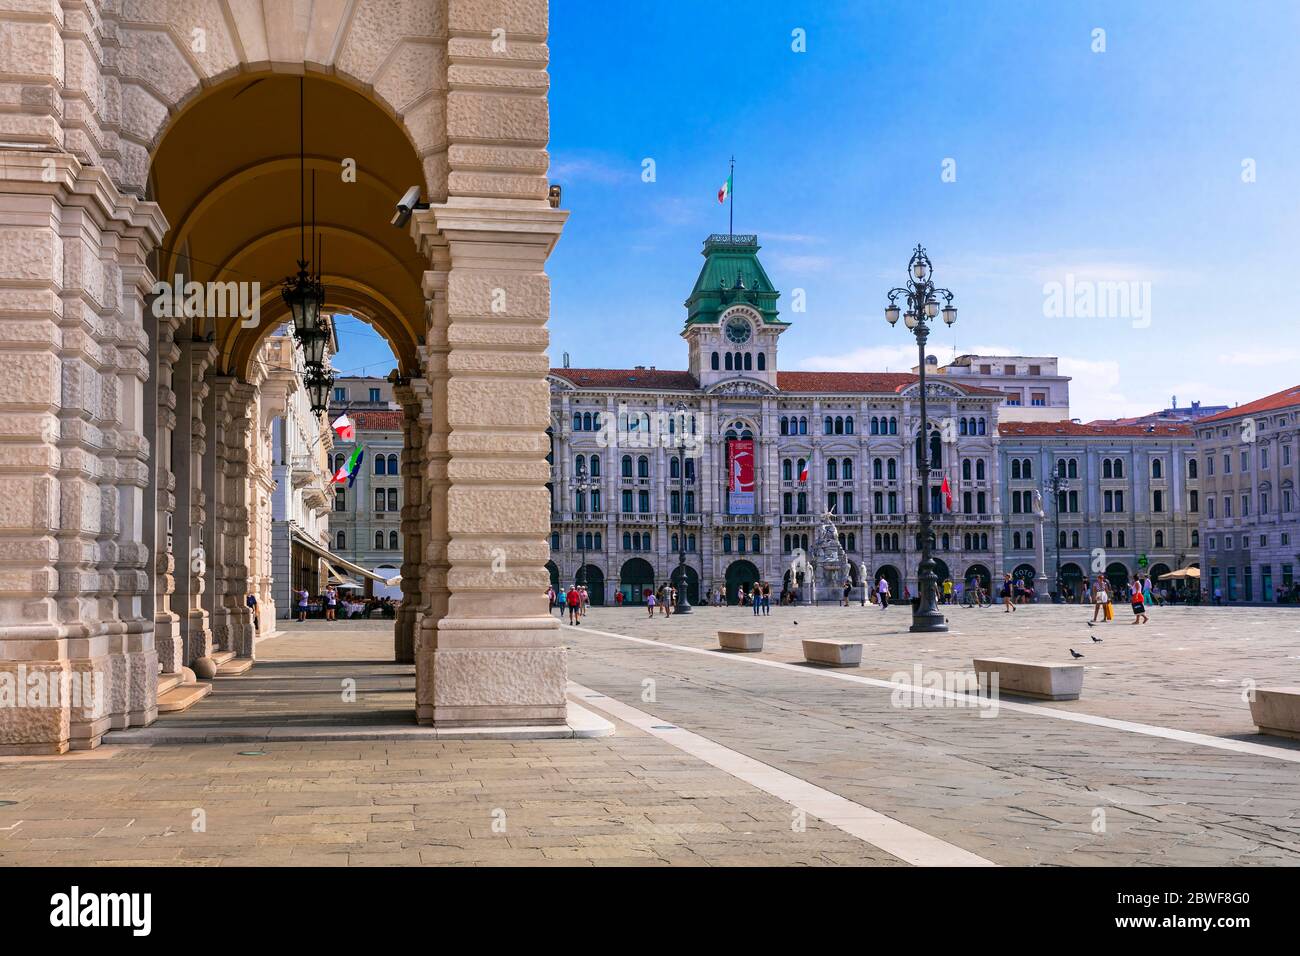 Piazza unità d'Italia, la place principale de Trieste, ville portuaire dans le nord-est de l'Italie. Août 2019 Banque D'Images